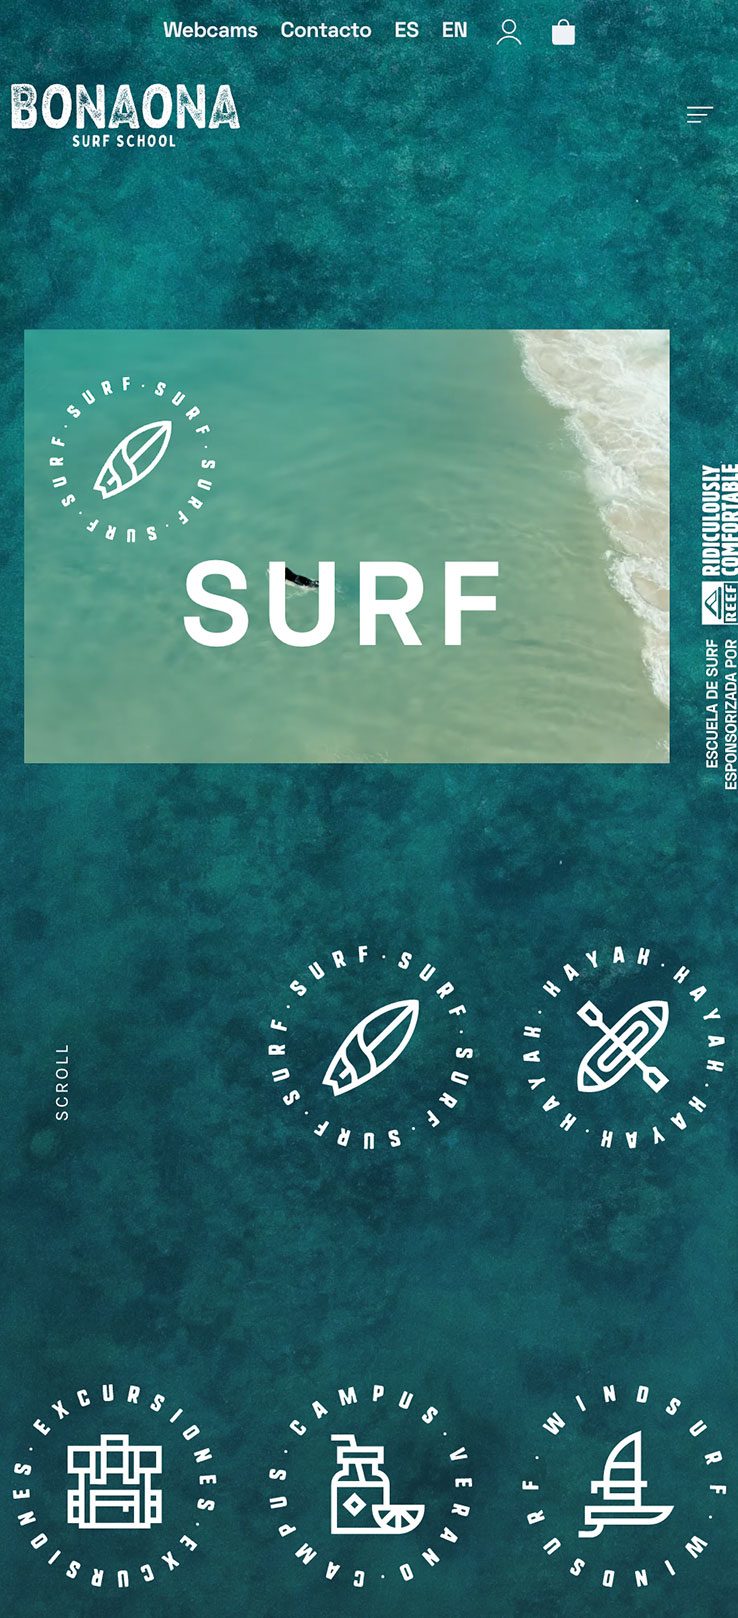 ▷ Ejemplo de página web para escuelas de surf [A medida]